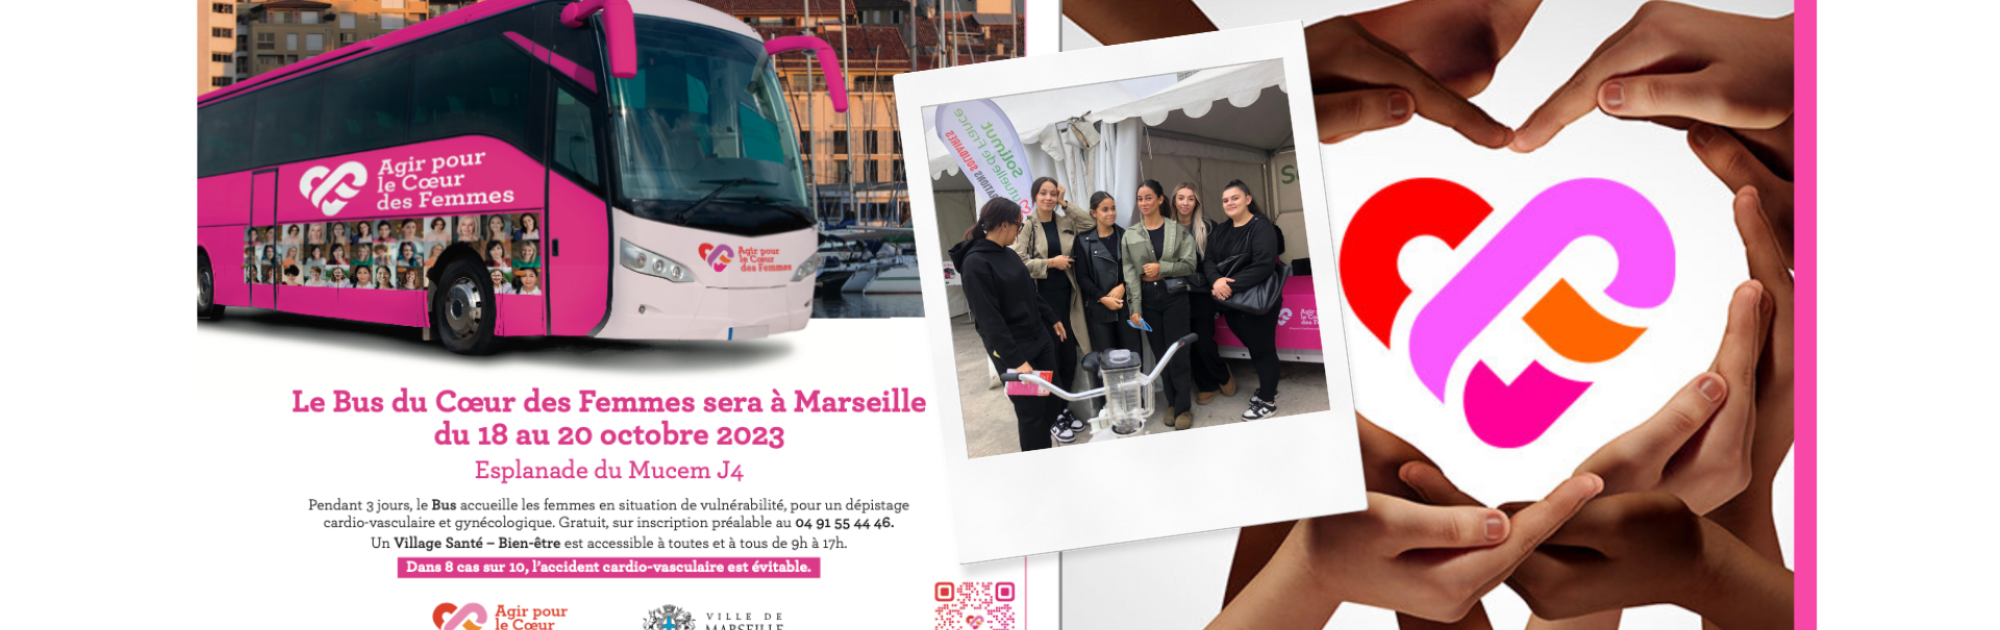 Le bus du coeur des femmes à Marseille